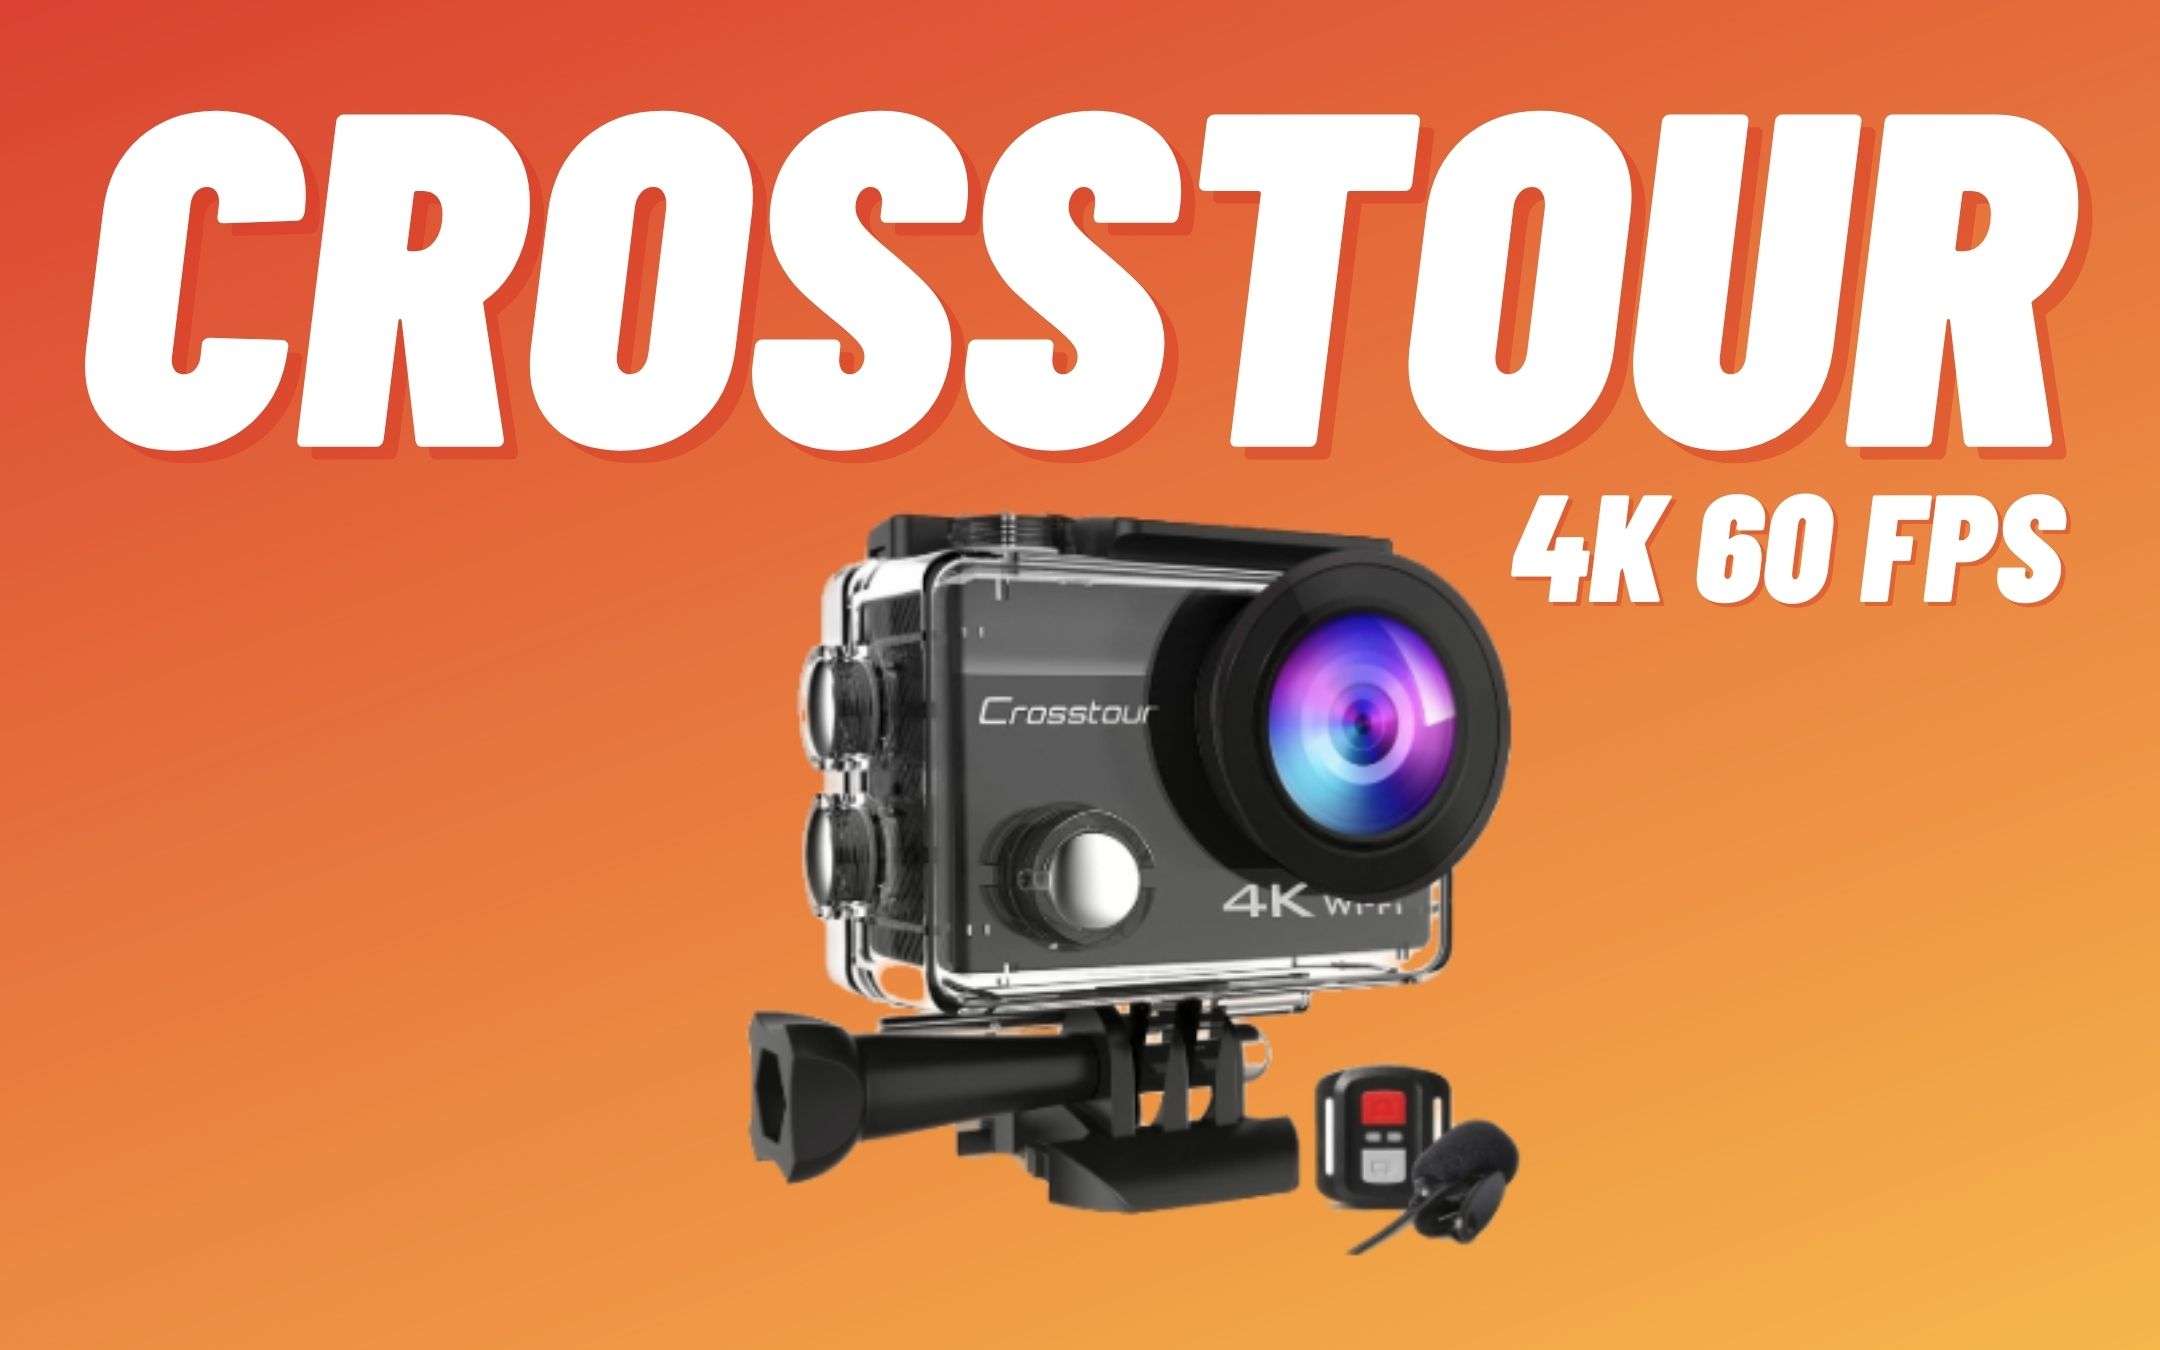 Action Cam Crosstour 4K: costa POCHISSIMO! (40€)